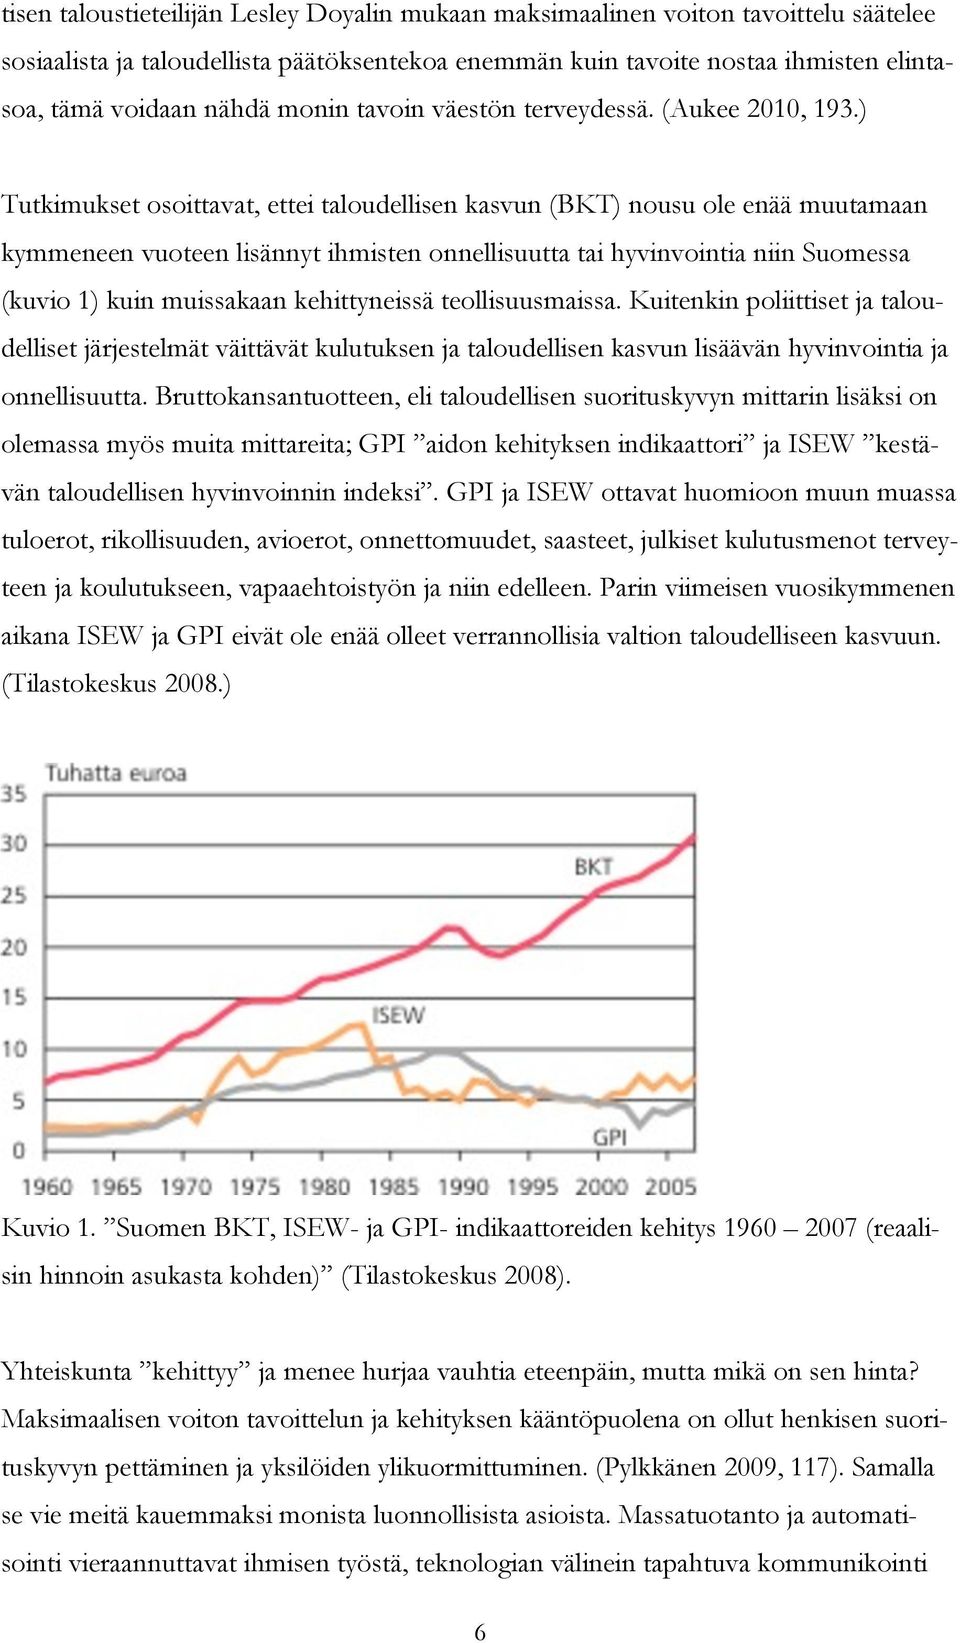 ) Tutkimukset osoittavat, ettei taloudellisen kasvun (BKT) nousu ole enää muutamaan kymmeneen vuoteen lisännyt ihmisten onnellisuutta tai hyvinvointia niin Suomessa (kuvio 1) kuin muissakaan